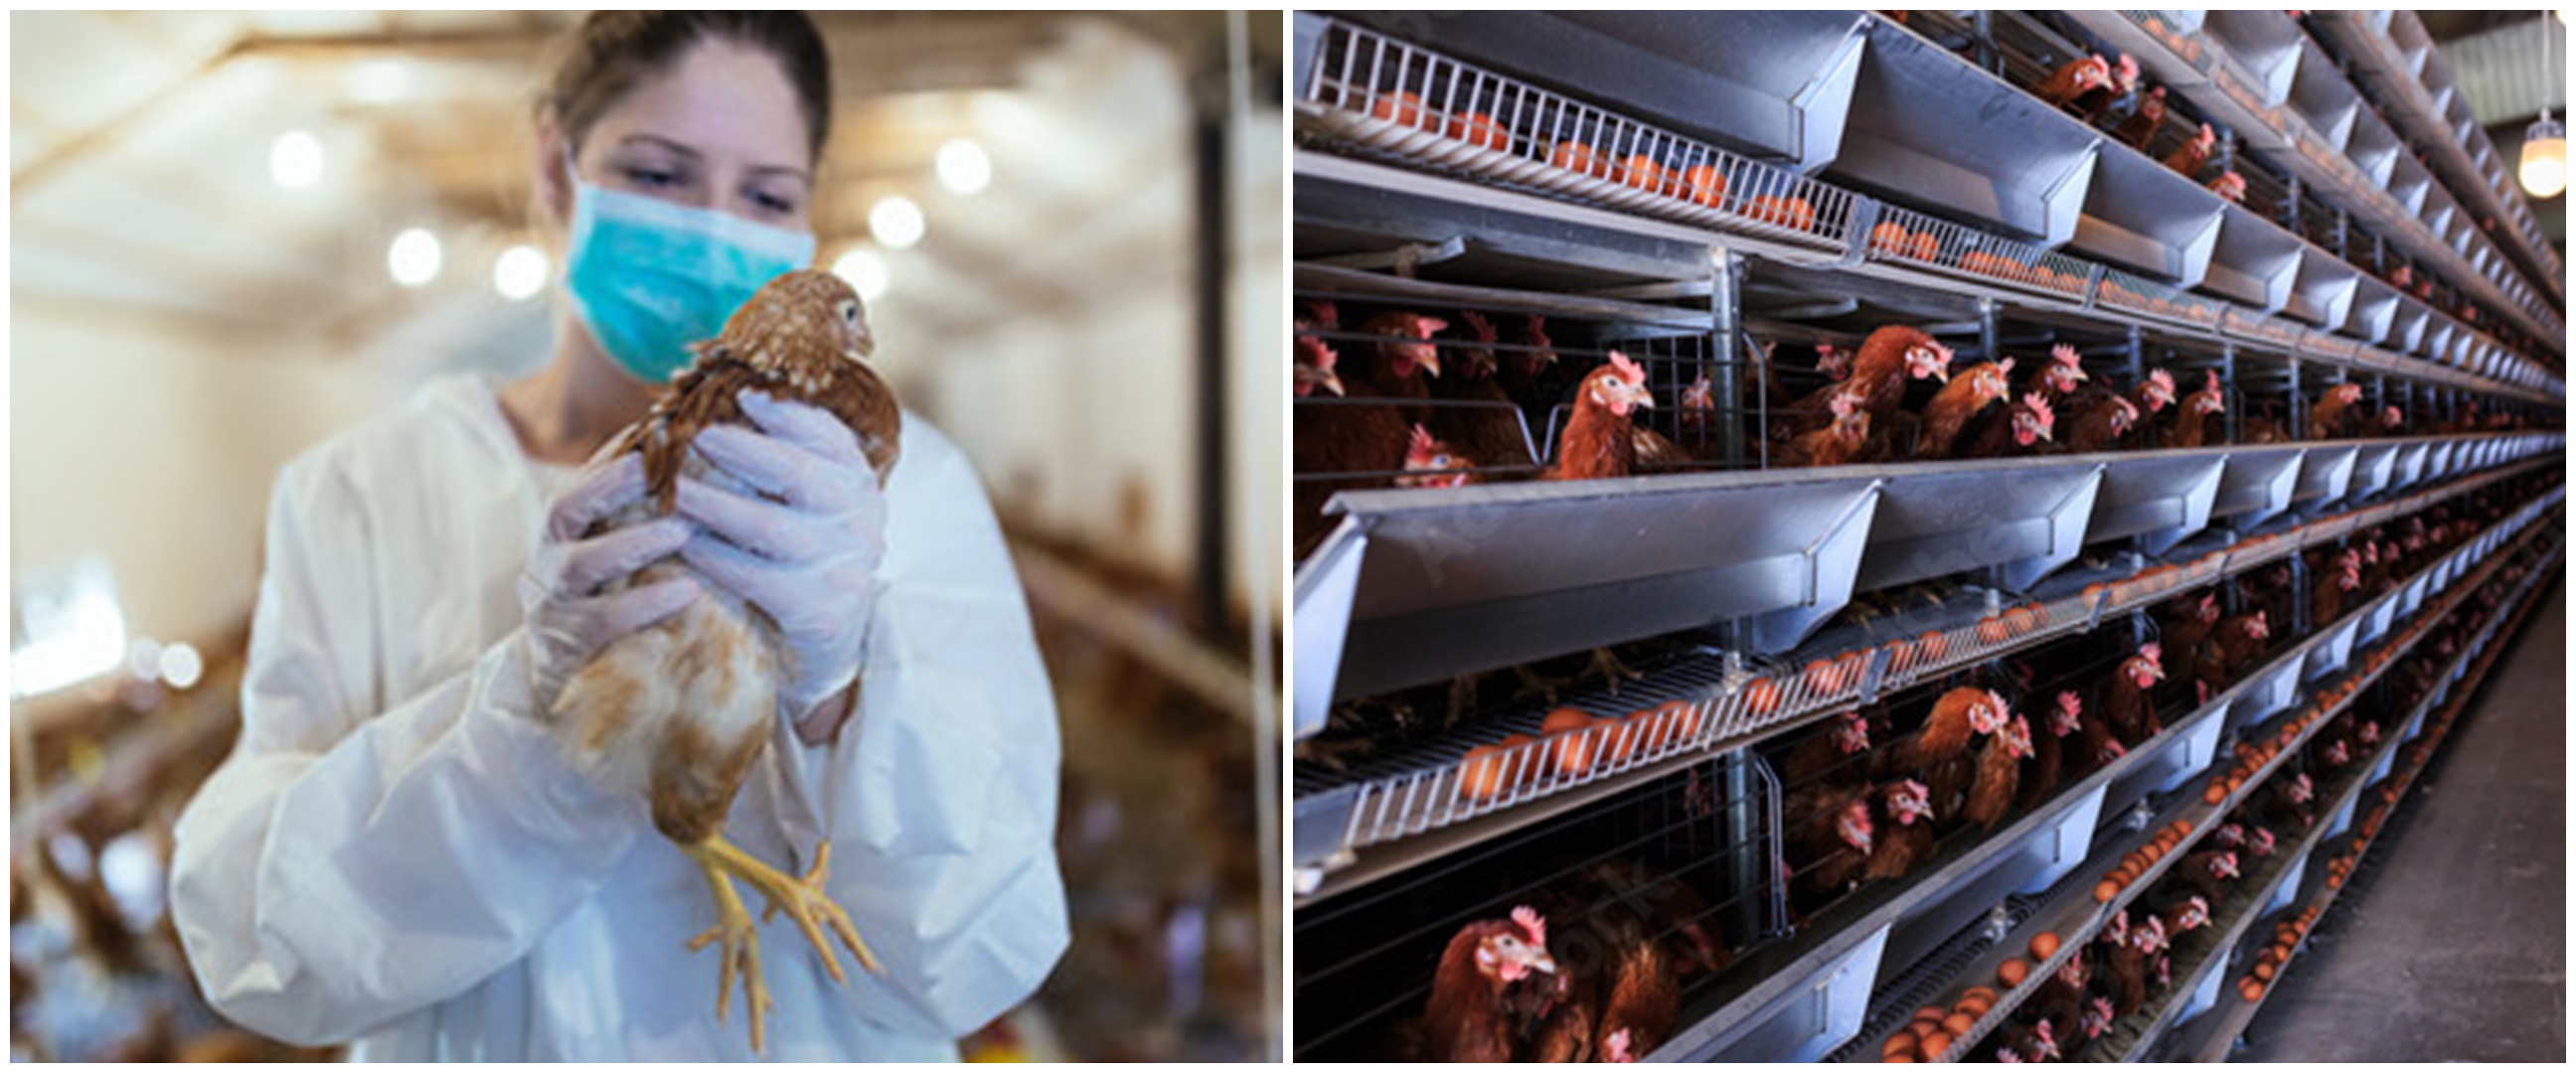 Kasus flu burung muncul kembali di China